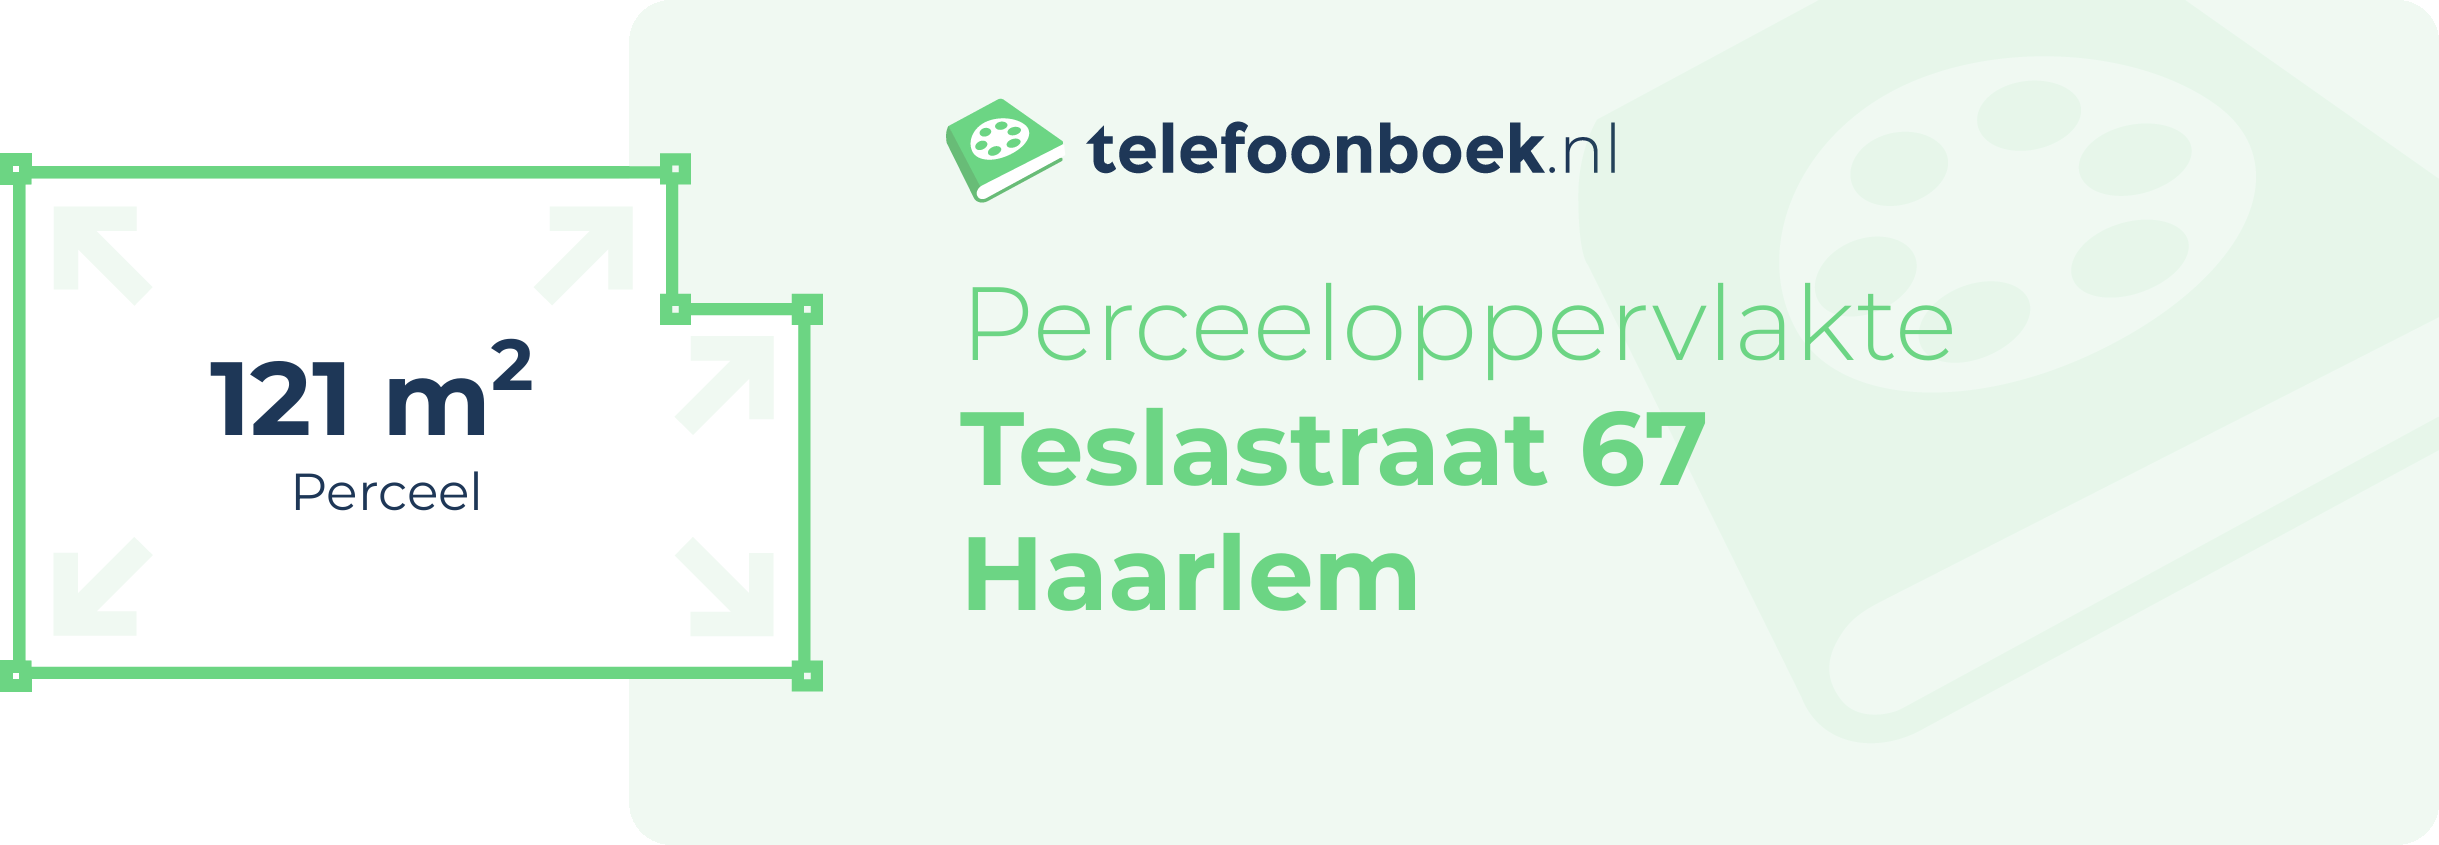 Perceeloppervlakte Teslastraat 67 Haarlem